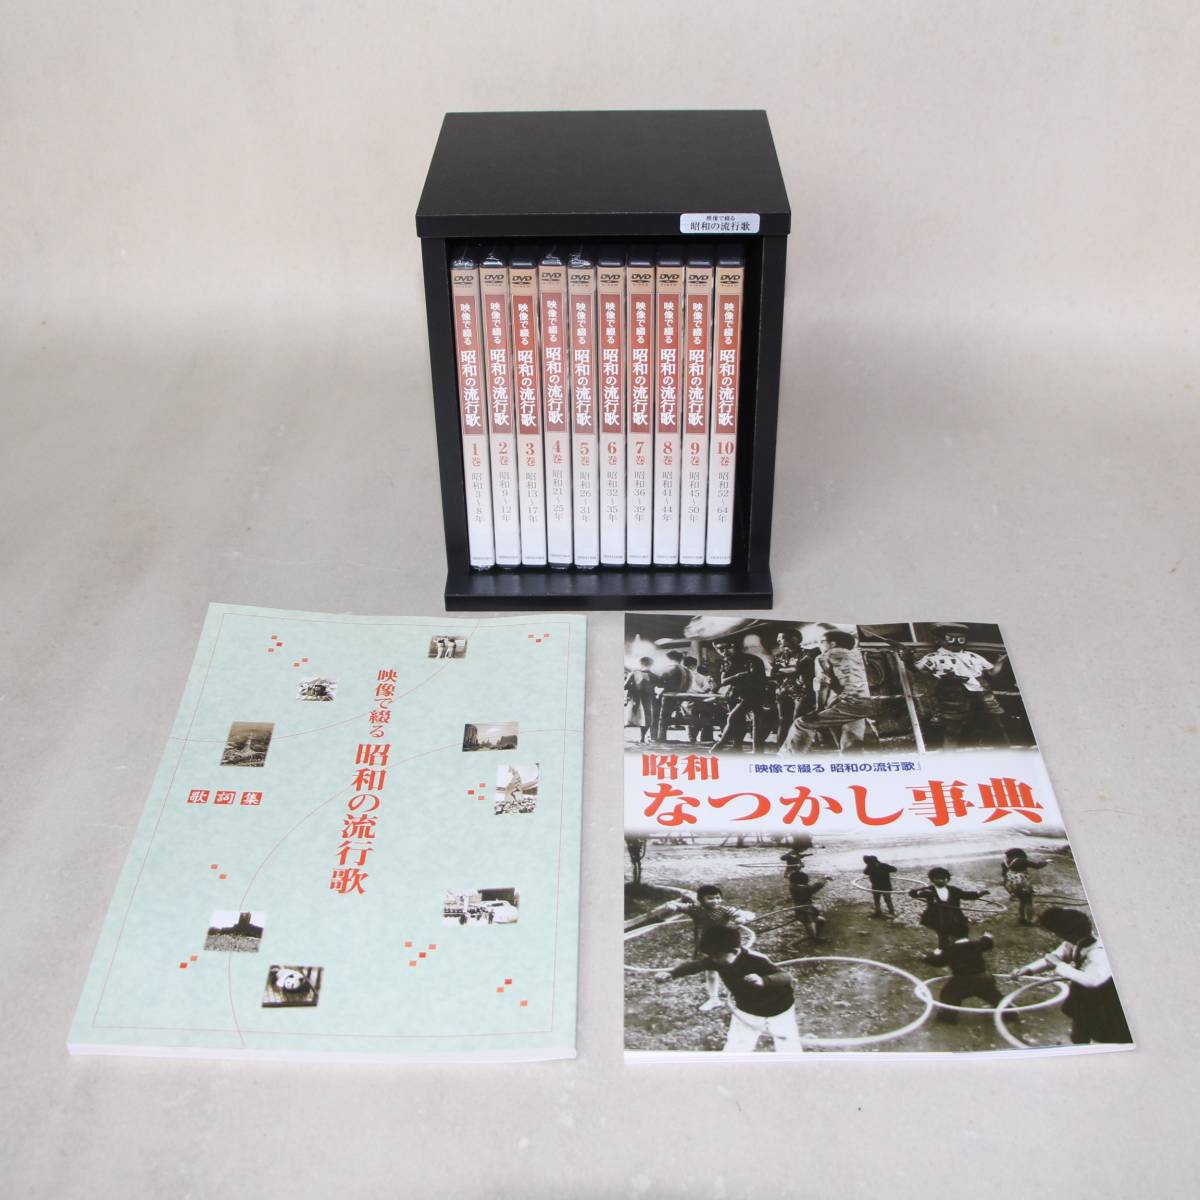 ♪♪ 「映像で綴る昭和の流行歌」 DVD全10巻 ユーキャン ♪♪